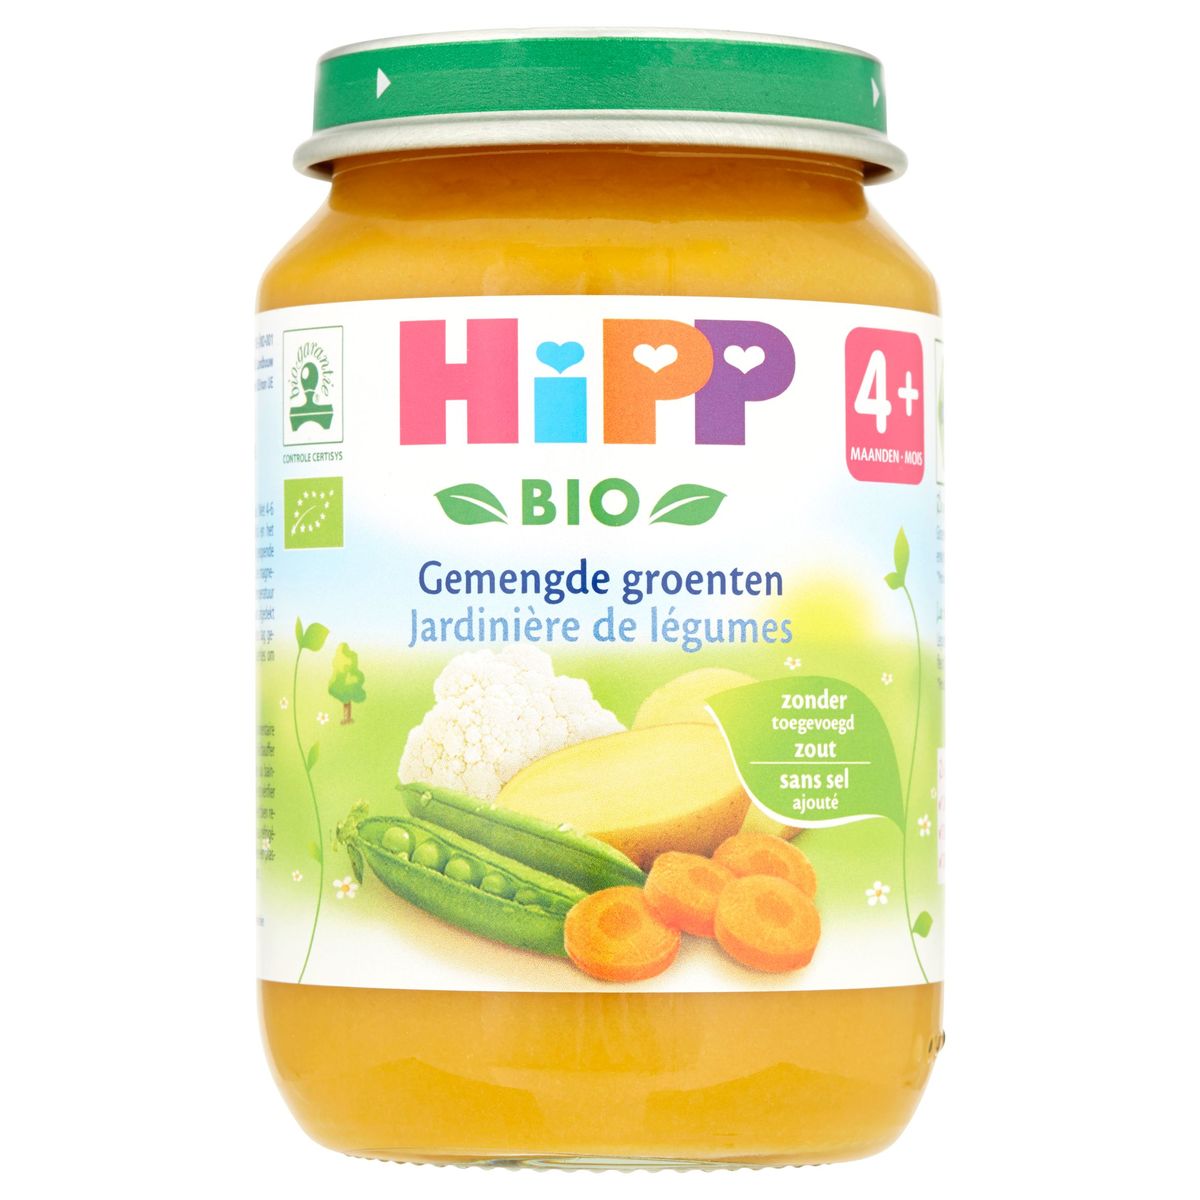 HiPP Bio Gemengde groenten 4+ maanden 190 g